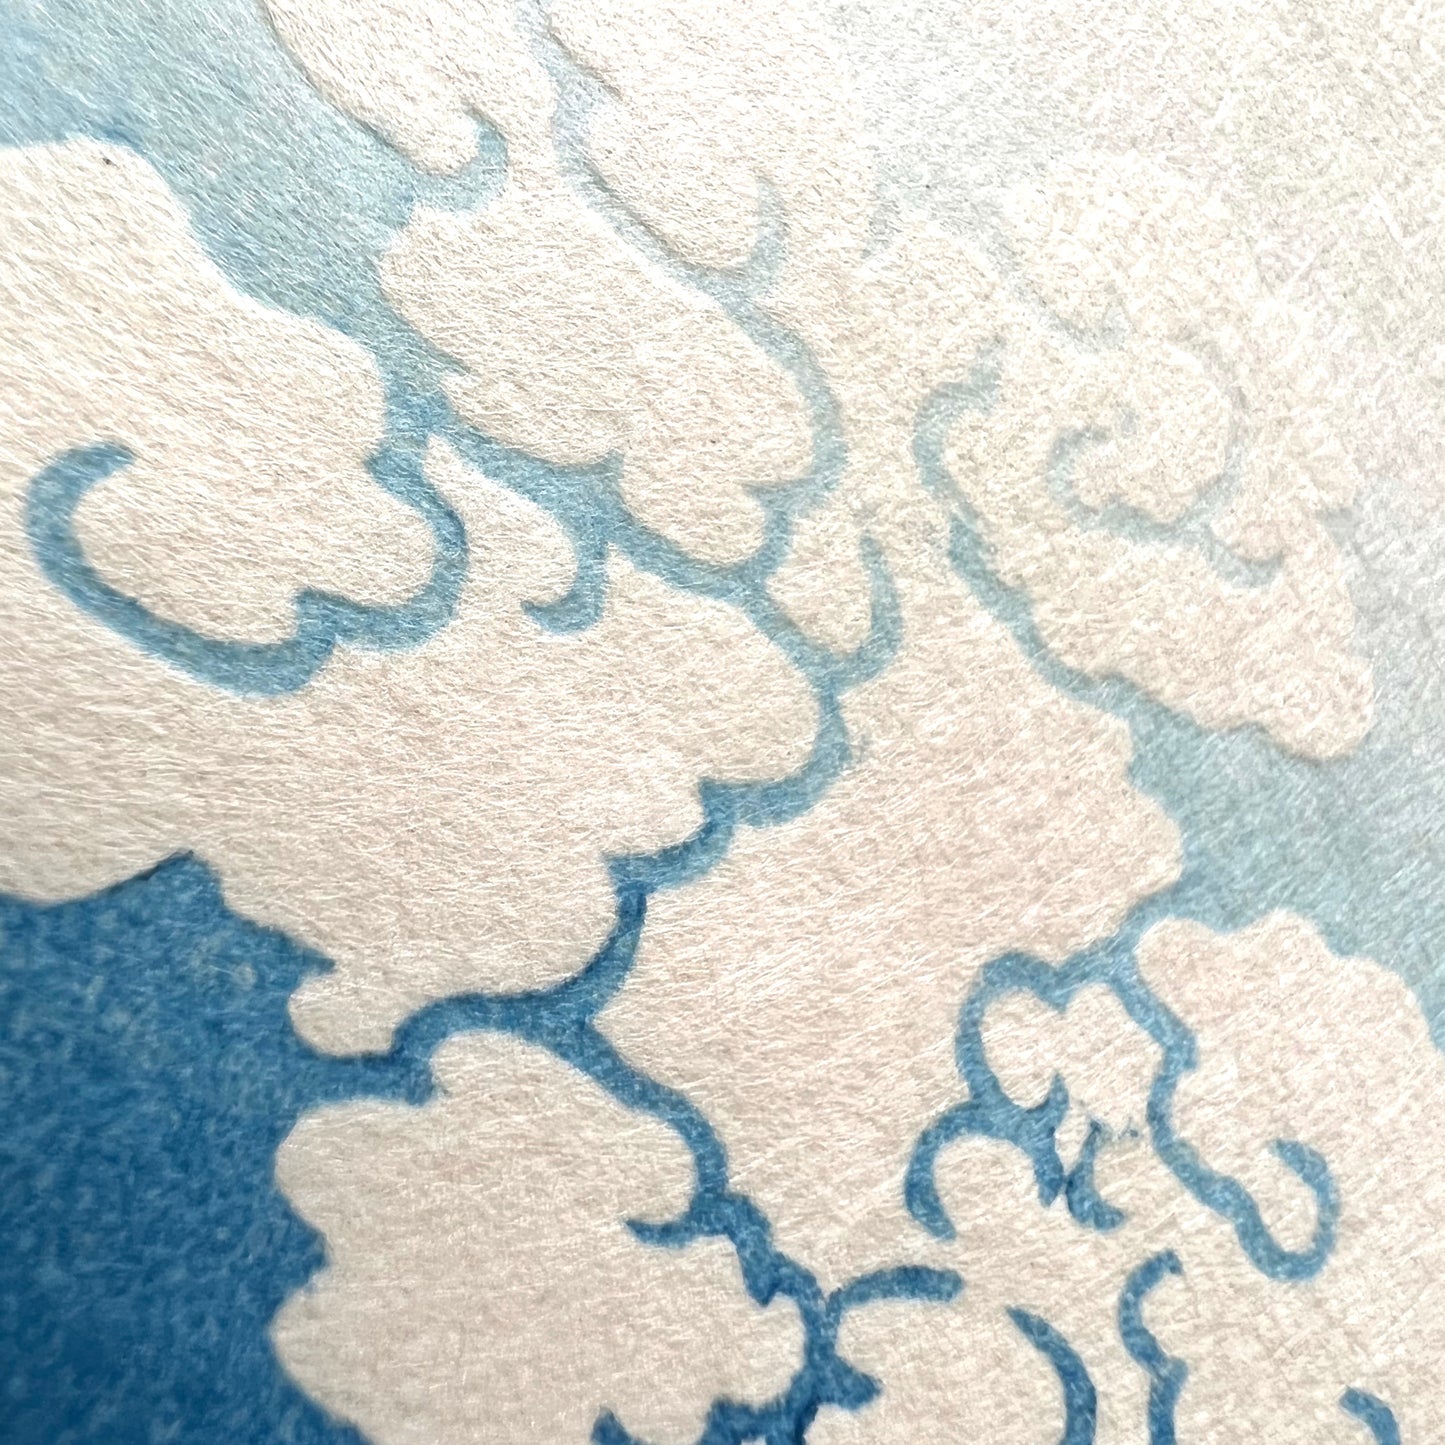 estampe japonaise Hokusai le Mont Fuji sous l'orage, des éclairs zèbrent son flan, les nuages gaufrent le papiers